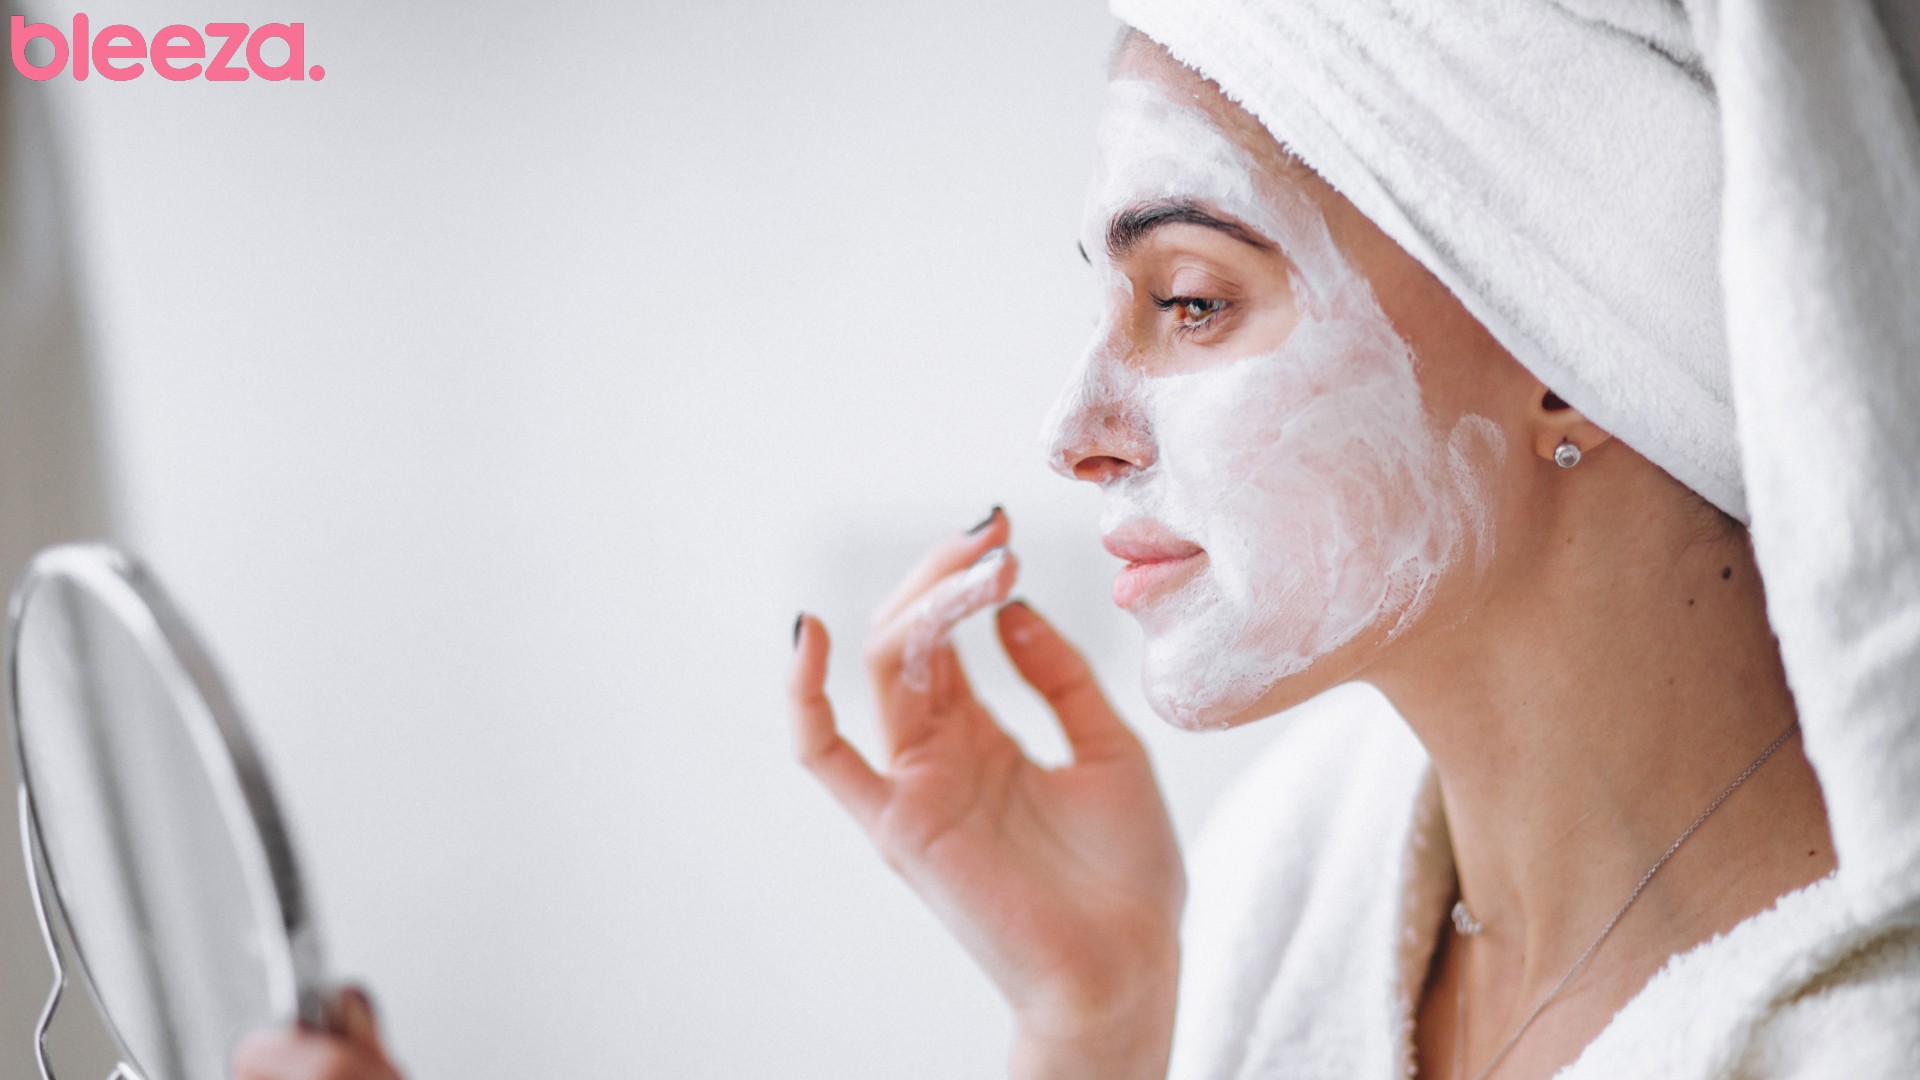 Foto de capa do artigo "Cuidados com o skincare: erros que podem afetar a pele"